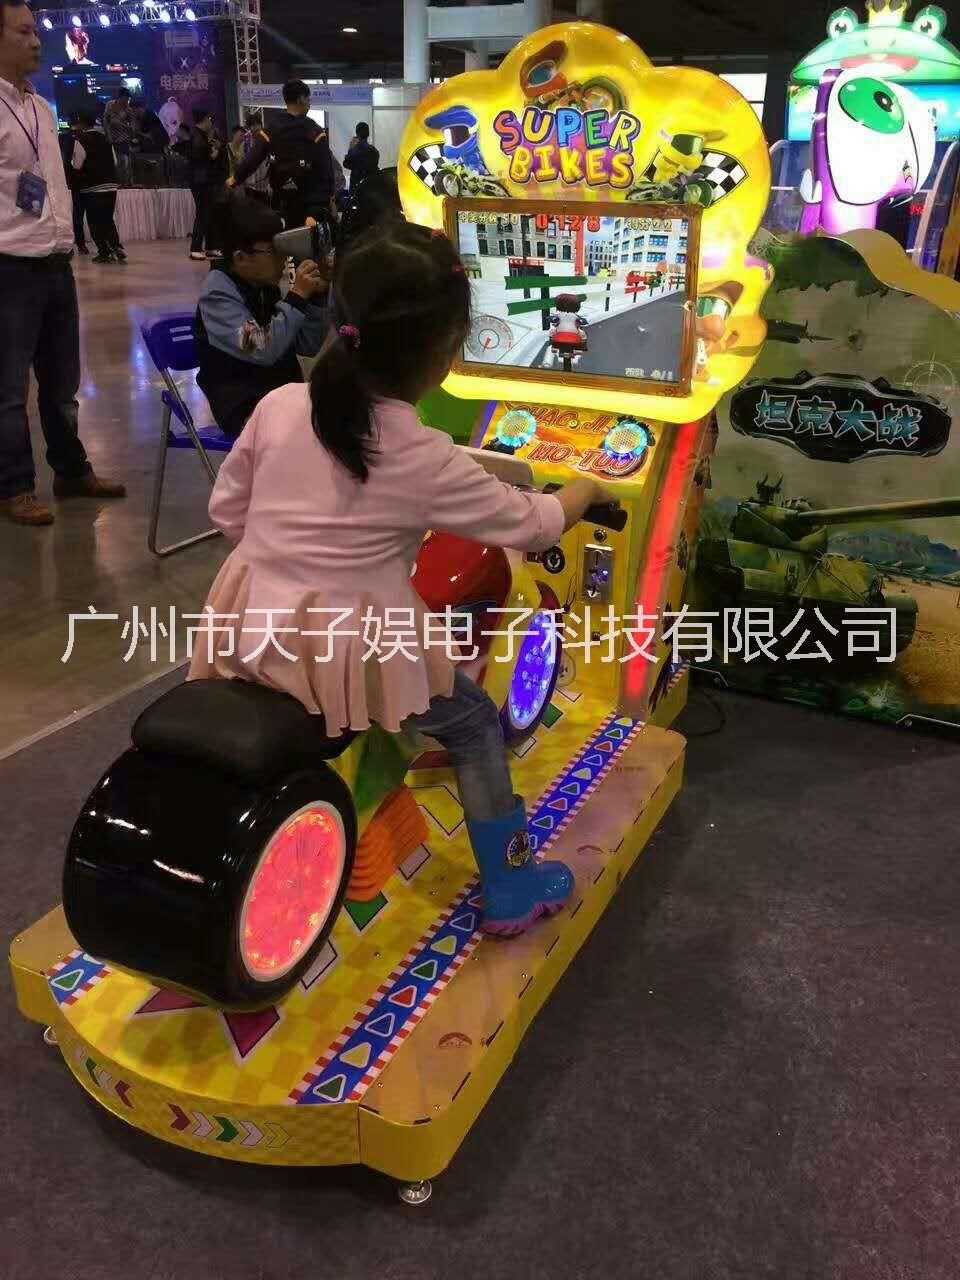 天子娱儿童娱乐设备超级摩托车 儿童乐园投币游戏机 广州游戏机厂家  大型室内电玩